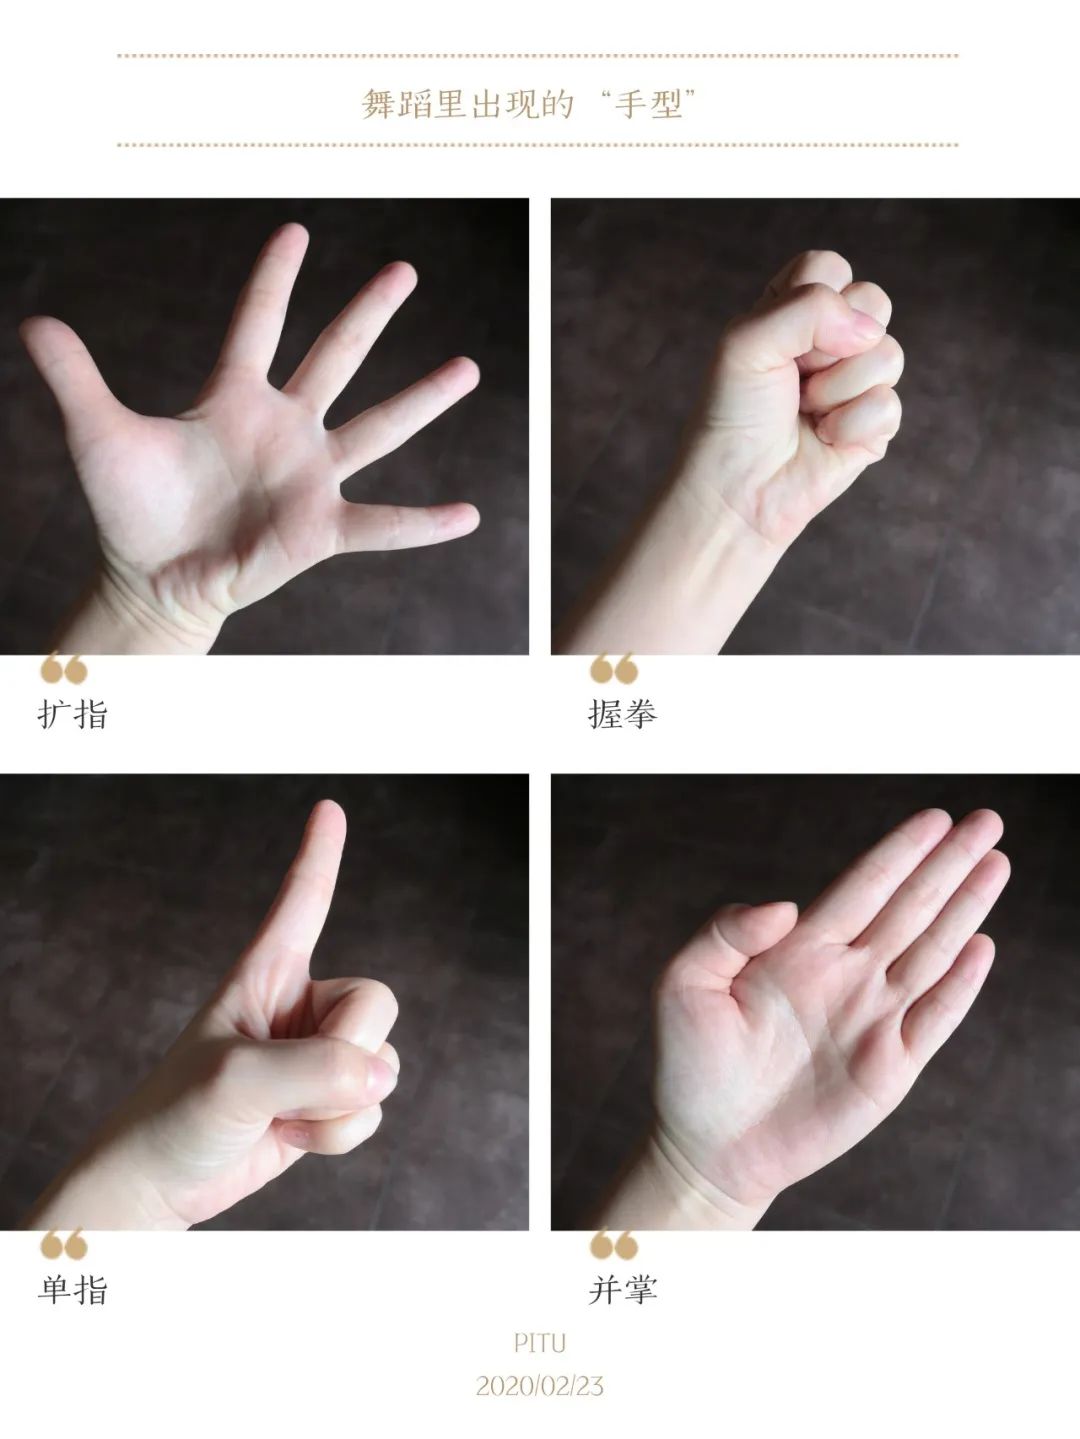 舞蹈中要注意的小细节: 手部动作: 扩指,握拳,单指,并掌 脚部动作